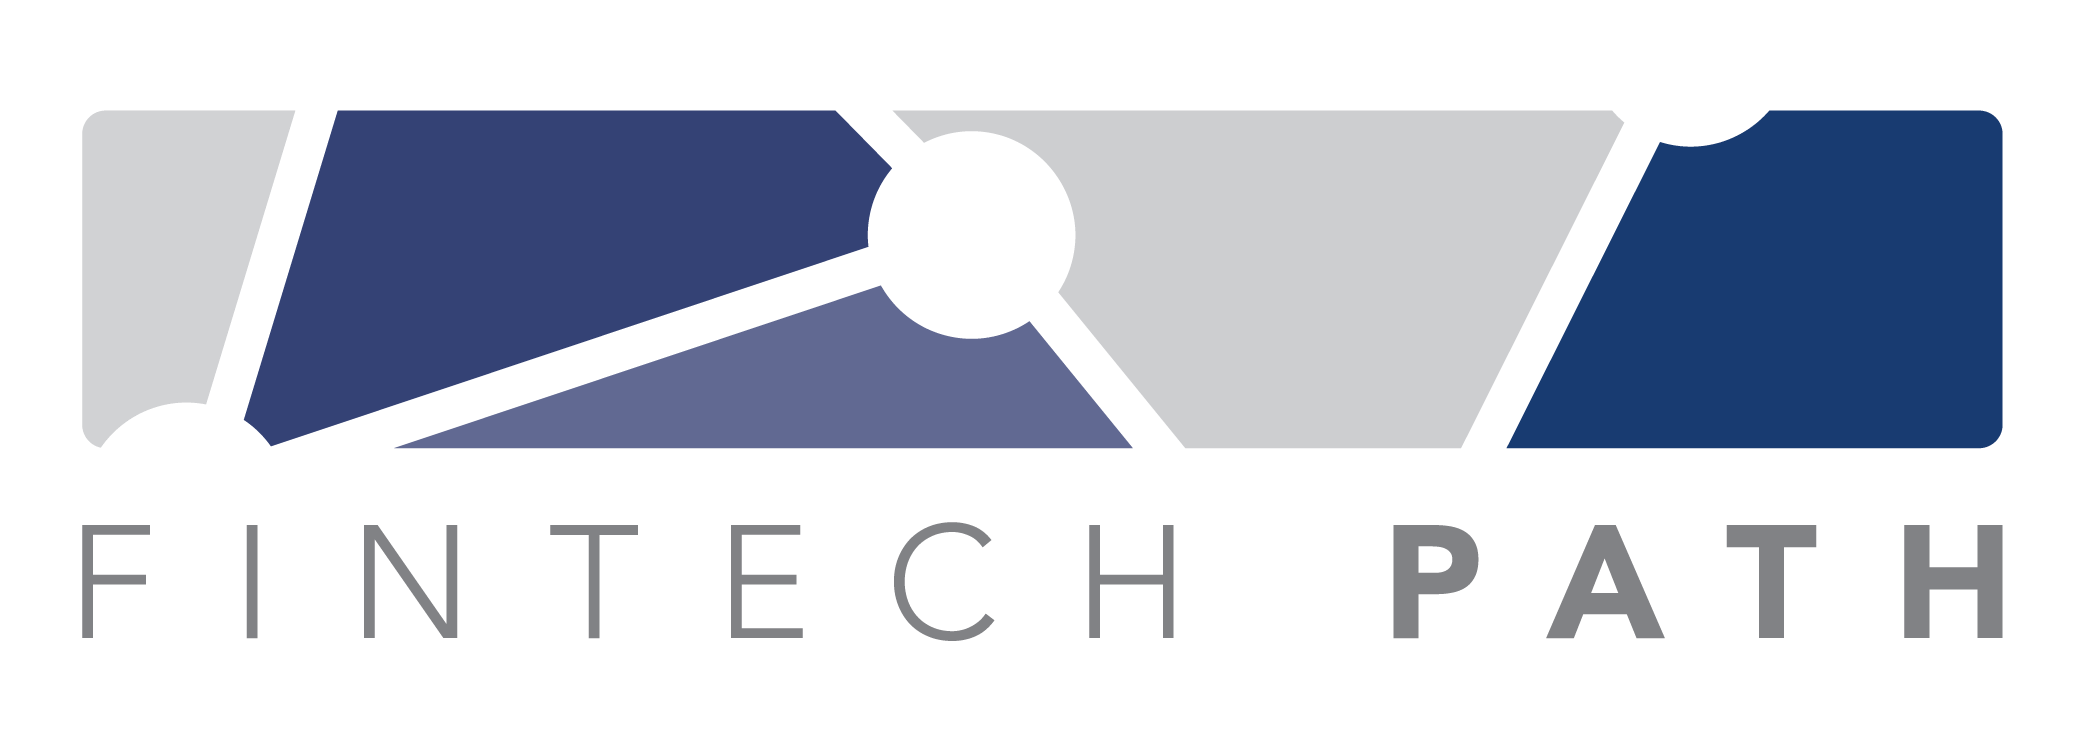 fintech path_logo